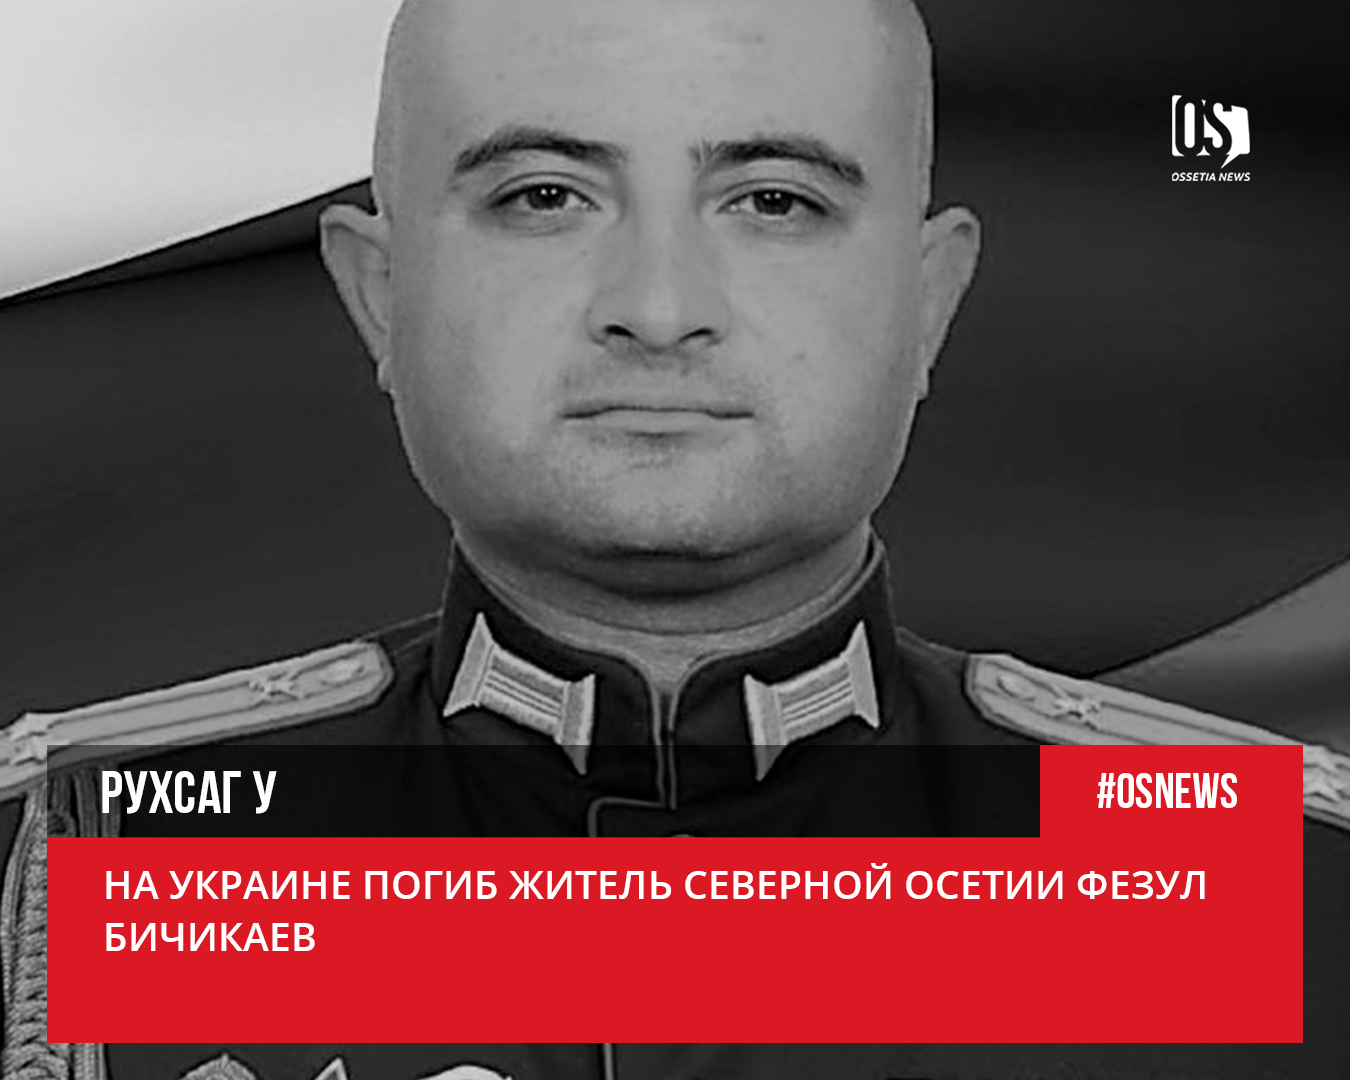 Подполковник Бичикаев с первых дней специальной военной операции командовал подразделениями на харьковском направлении.